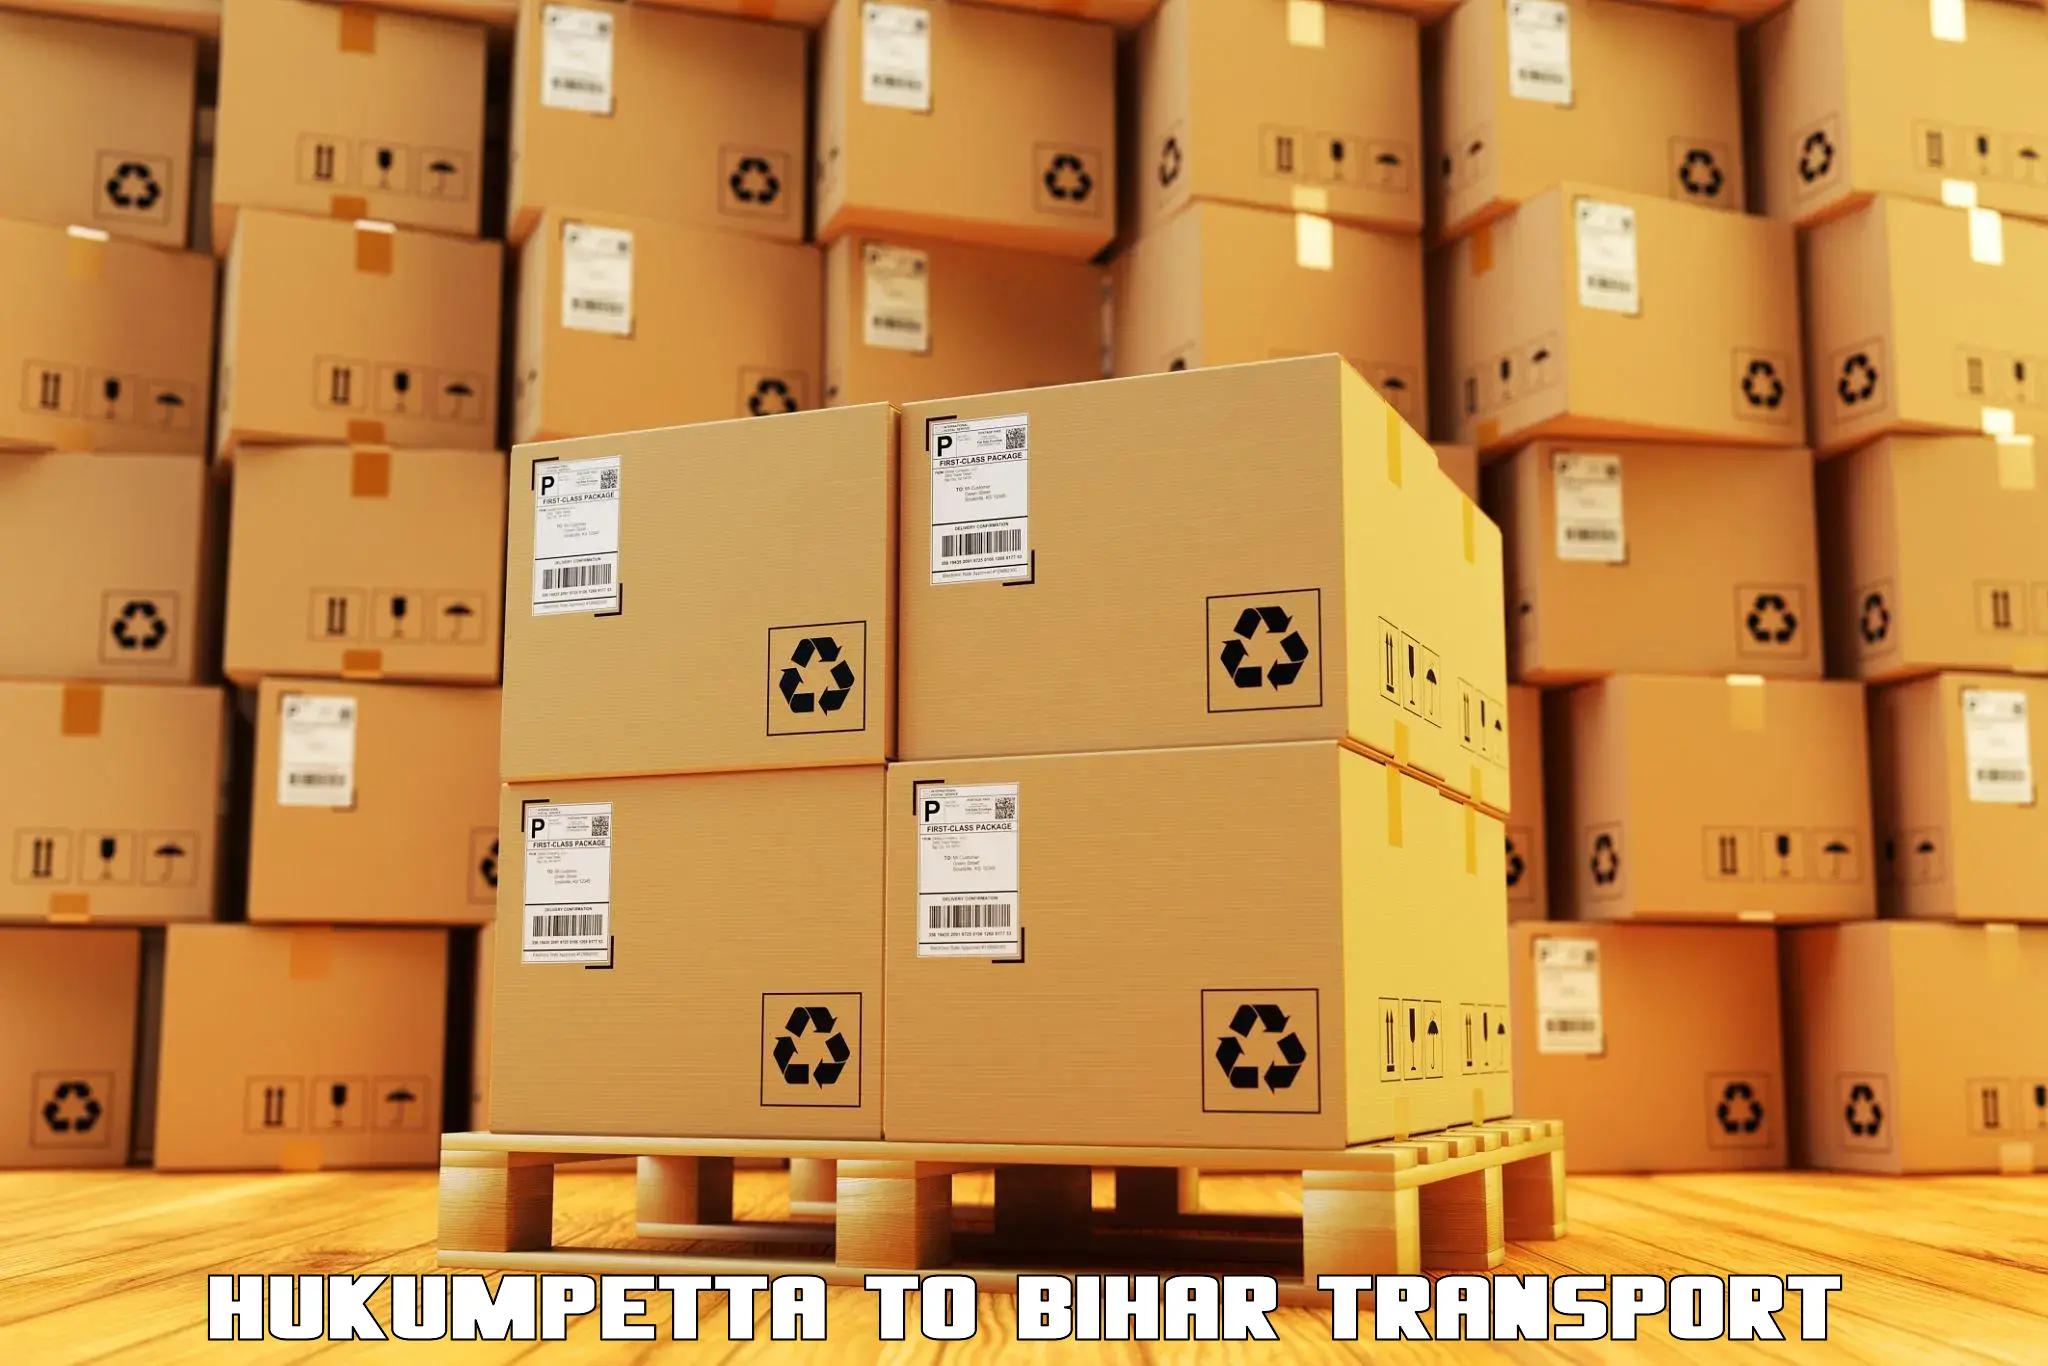 Daily parcel service transport Hukumpetta to Mahnar Bazar